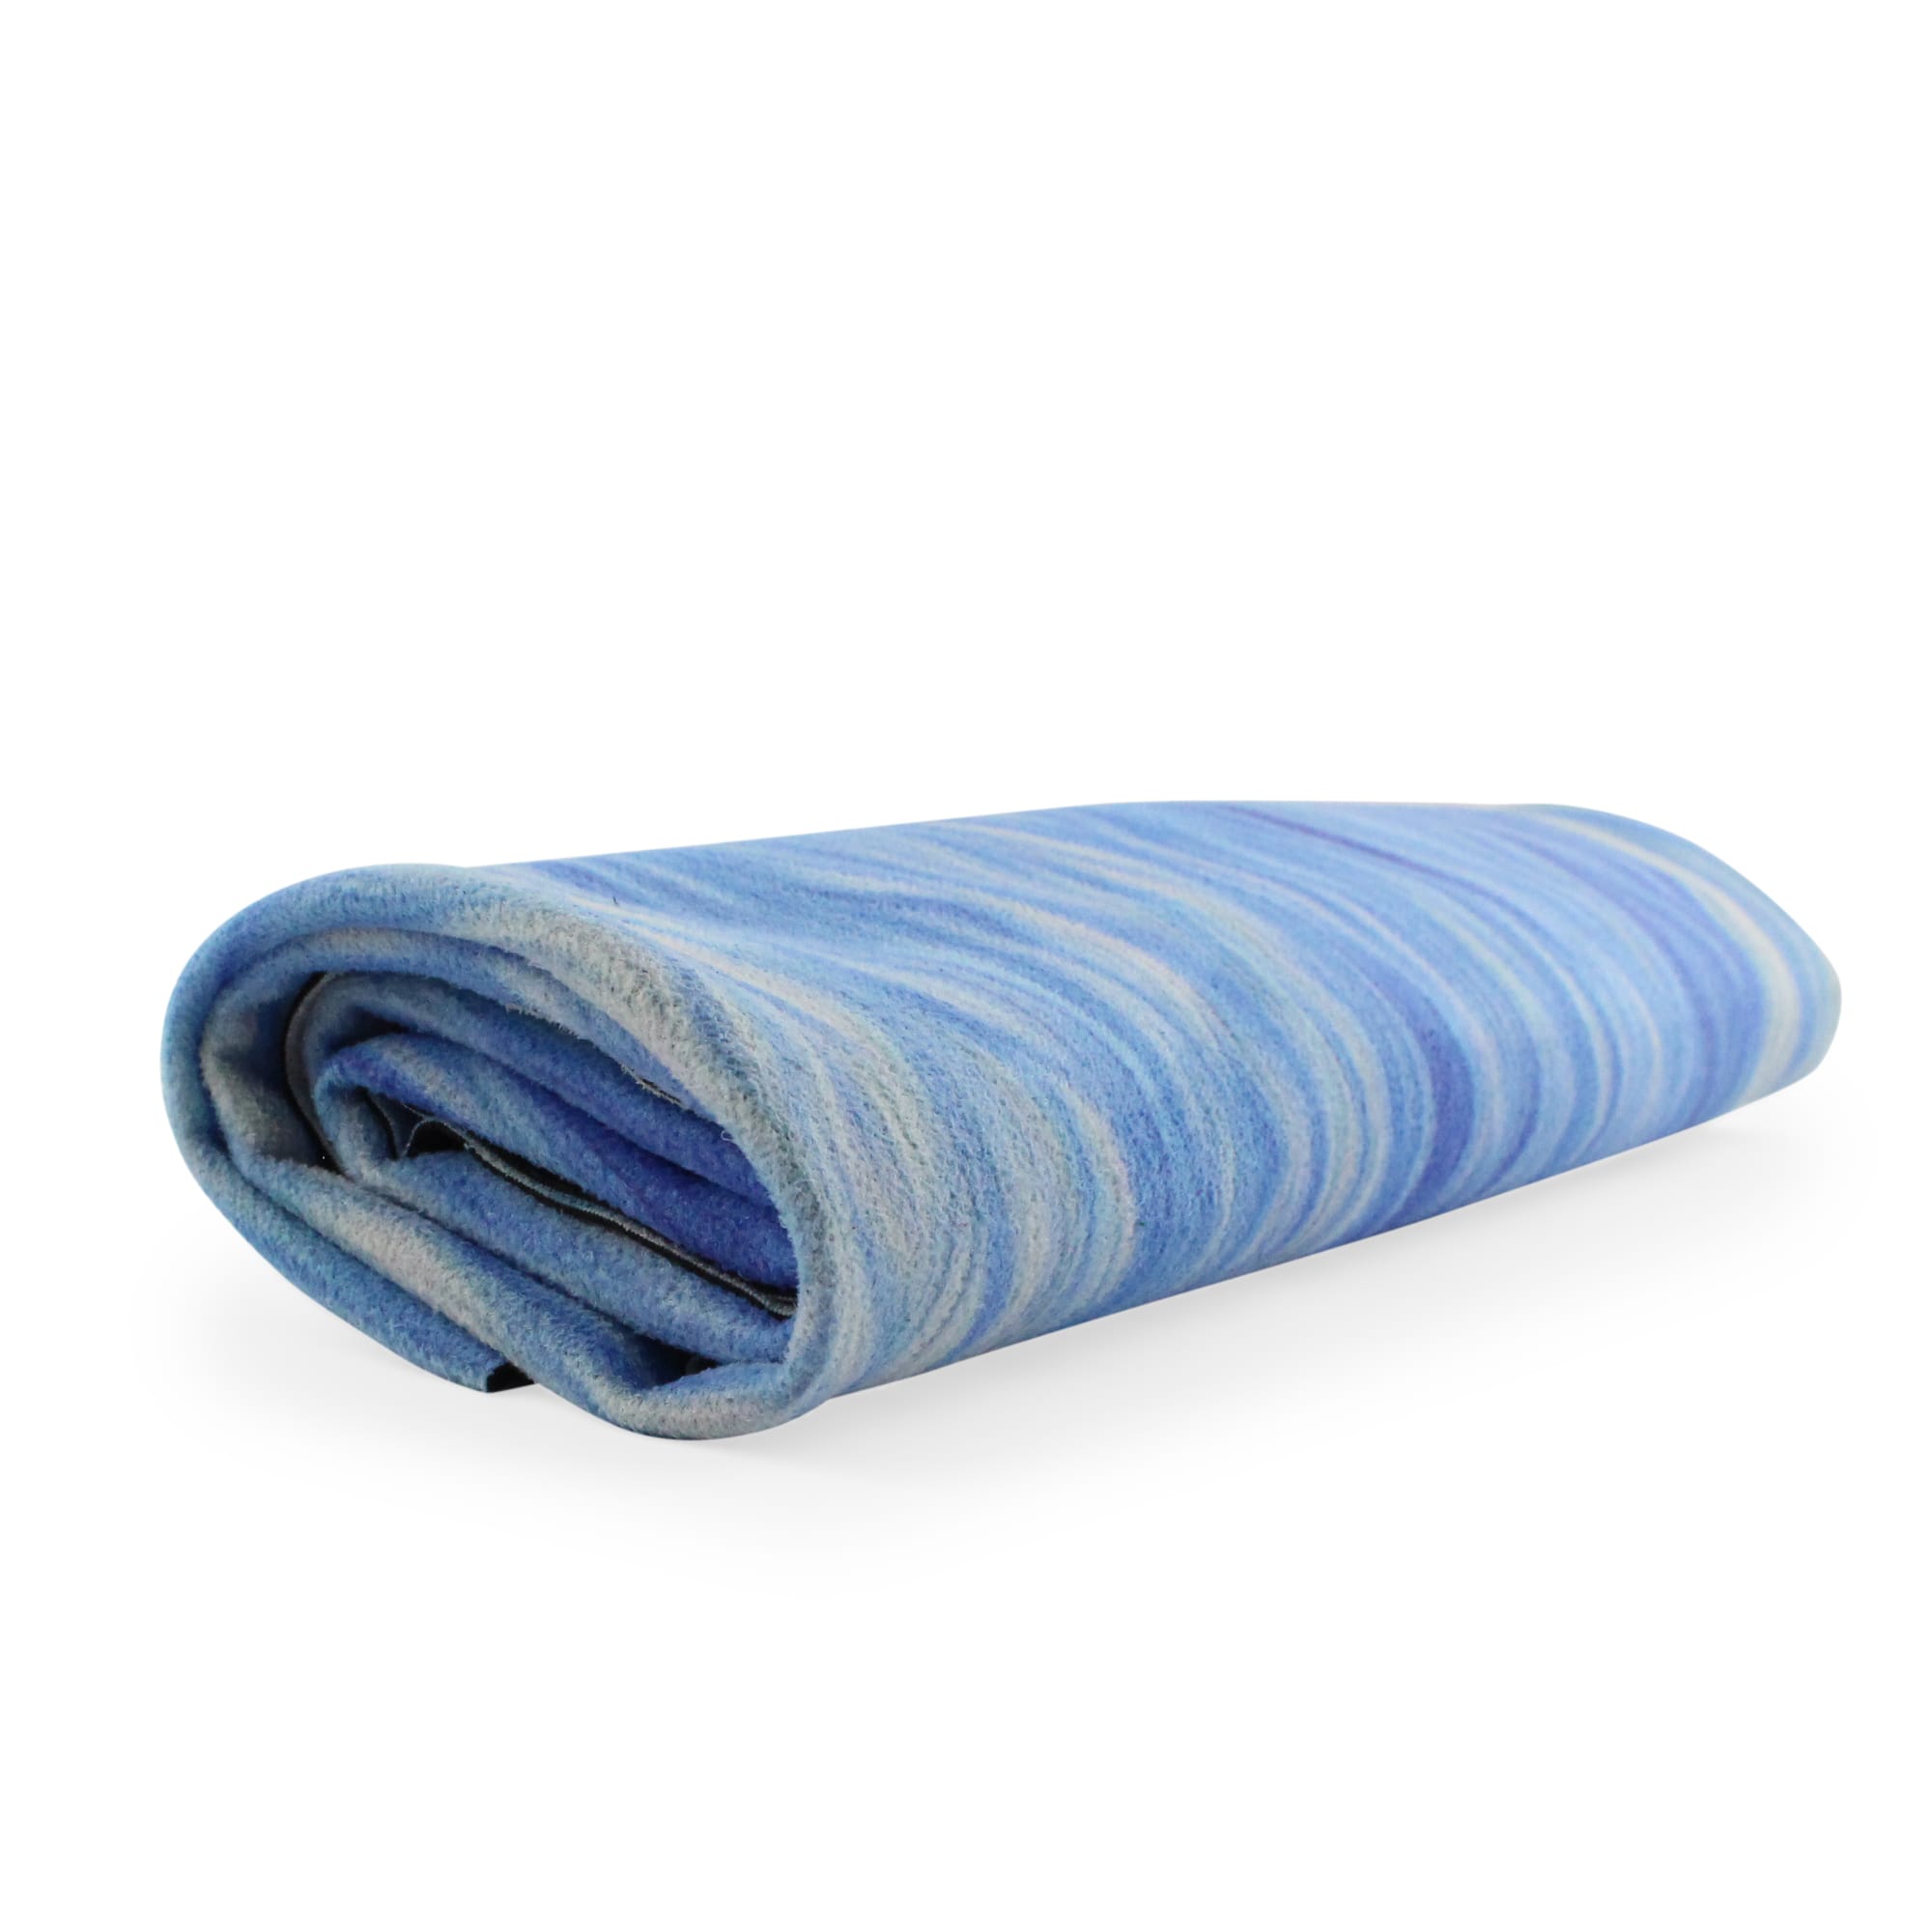 Pilates Reformer Mat Towel Cushion Anti Slip Pilates Reformer Pad Yoga Pads